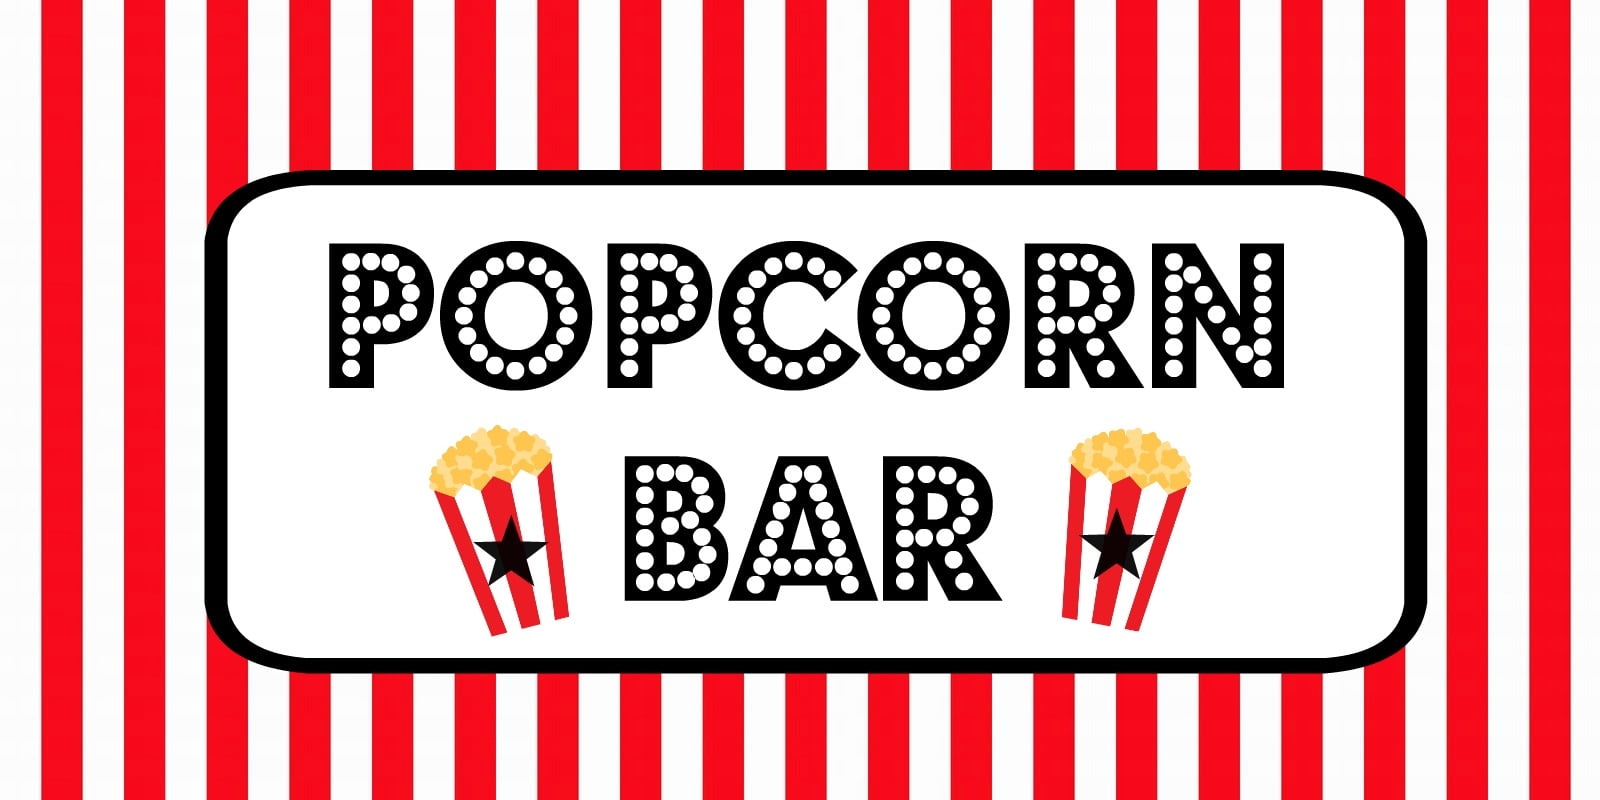 FREE Movie Night Popcorn Bar Printables - Free Printable